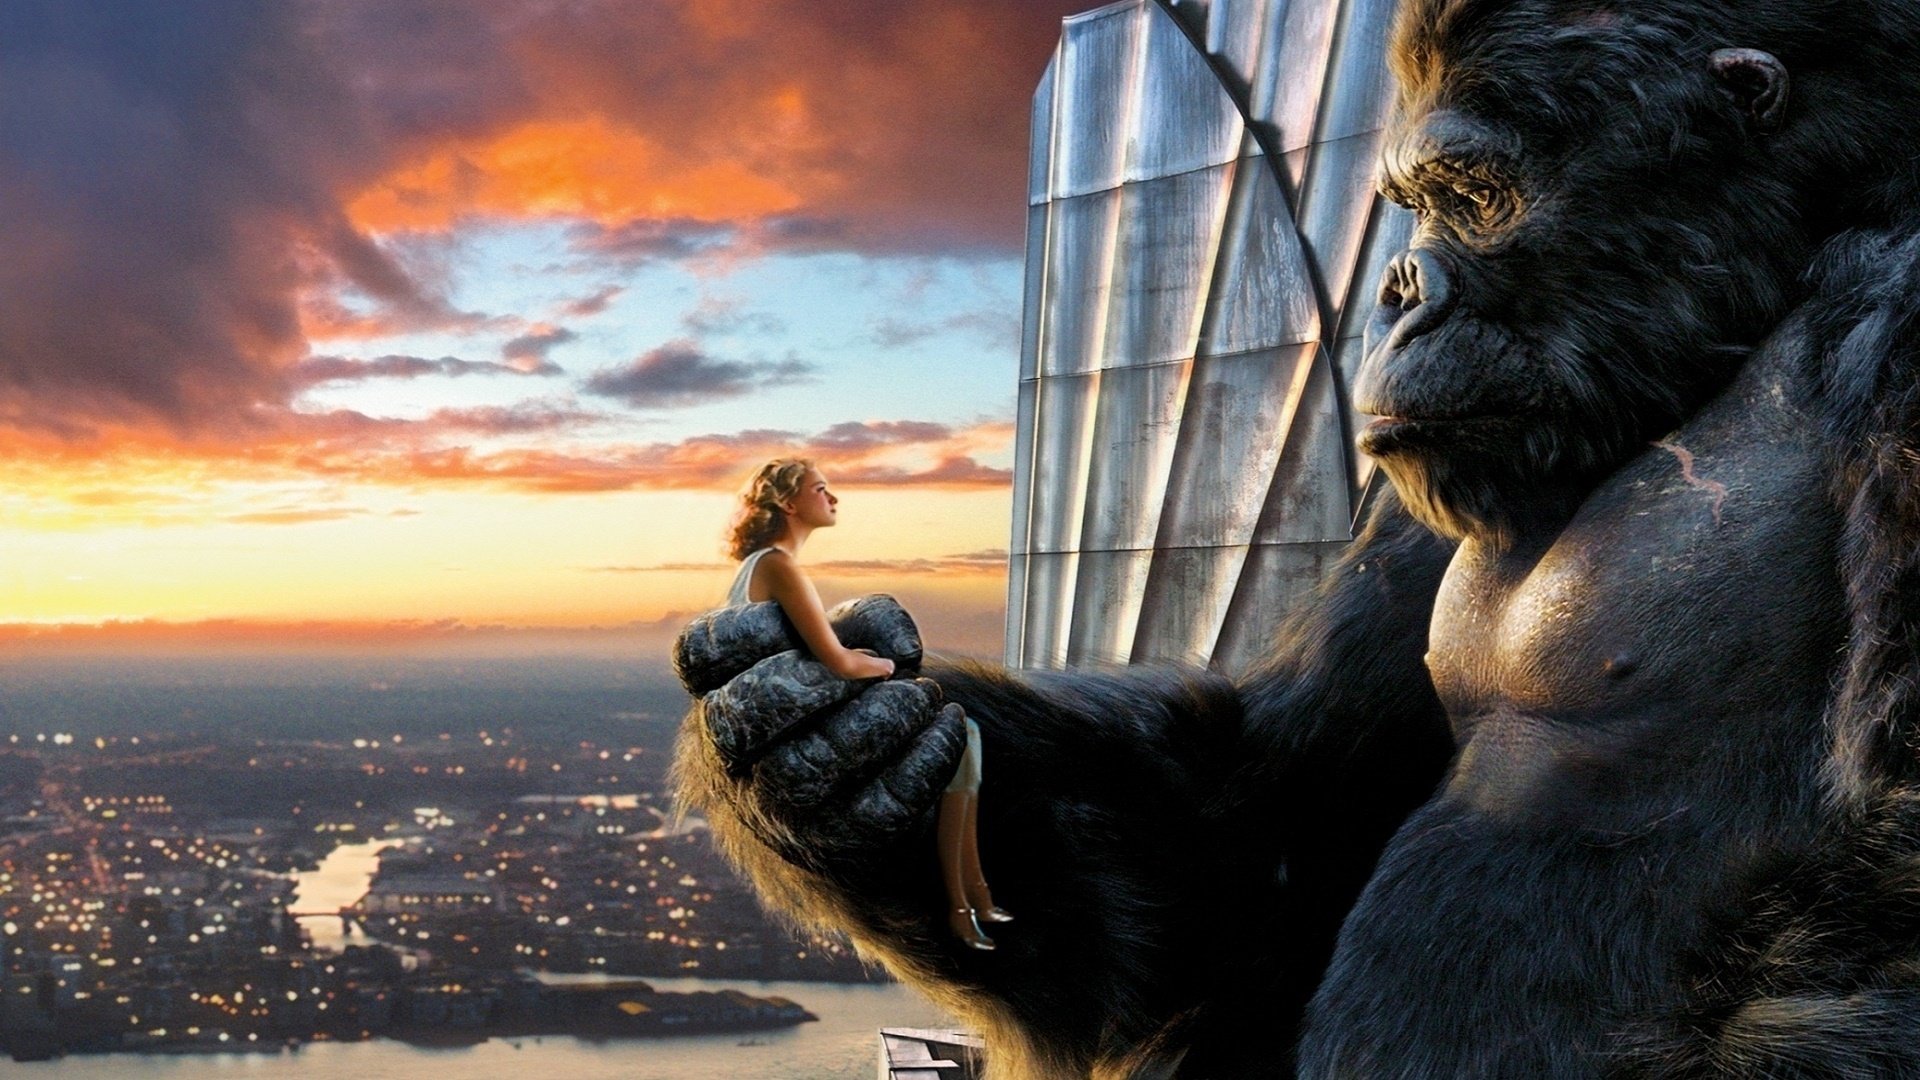 King Kong sur Amazon Prime Video : qui incarnait le gorille géant dans le film de Peter Jackson ?